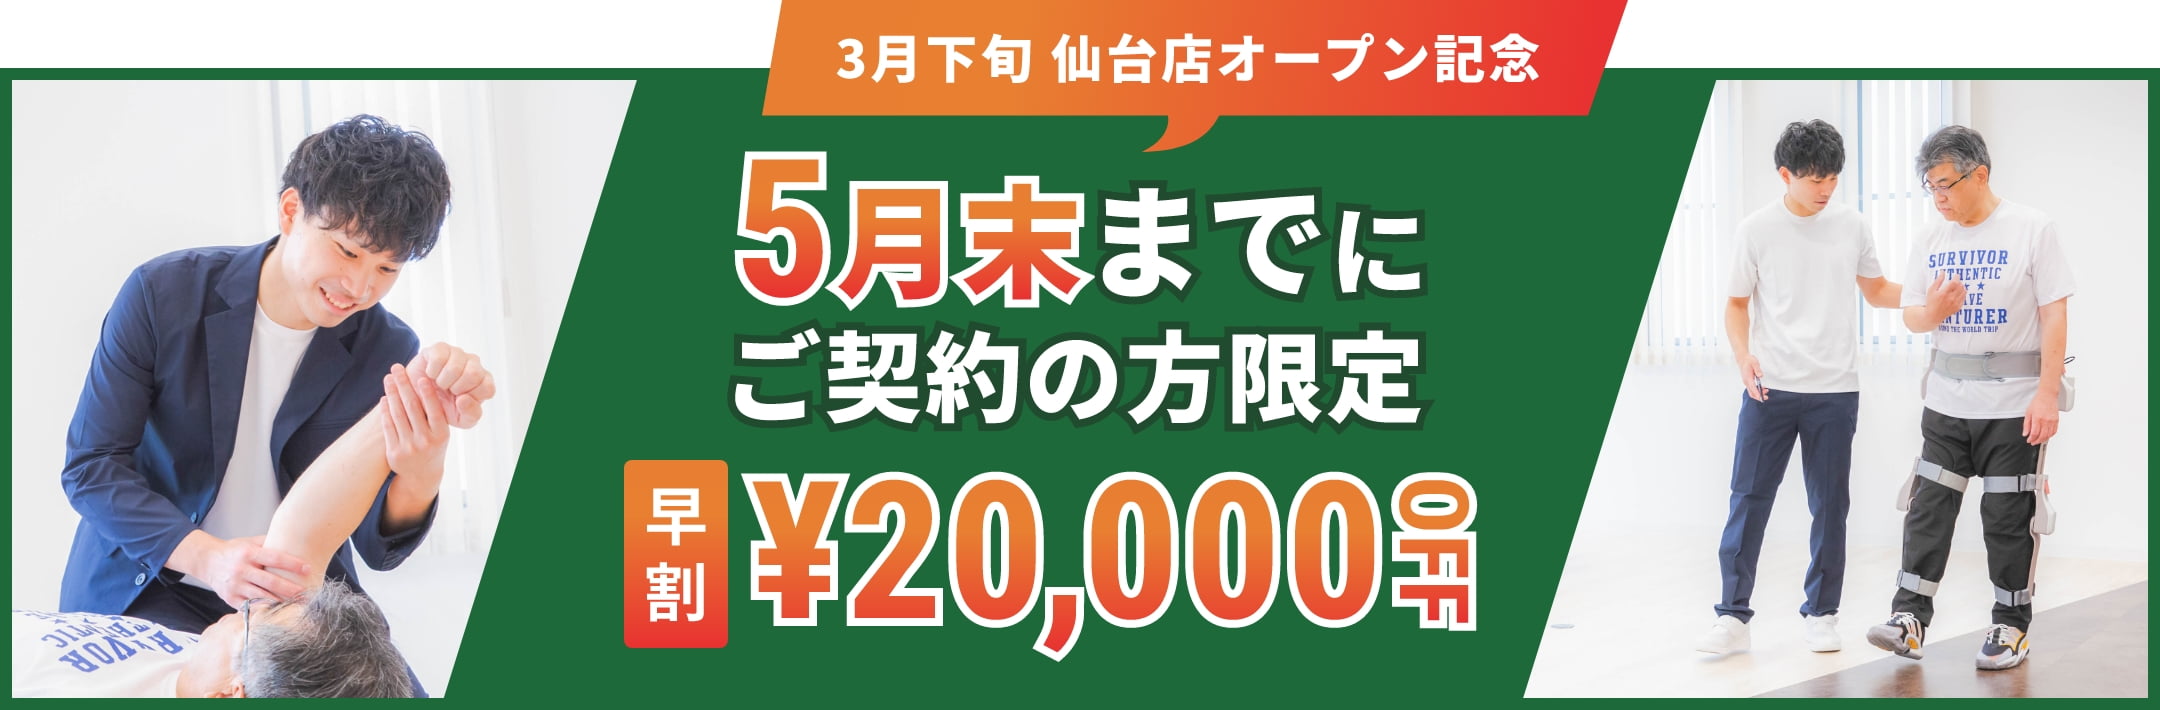 3月下旬仙台店オープン記念 4月末までにご契約の方限定早割20,000円OFF